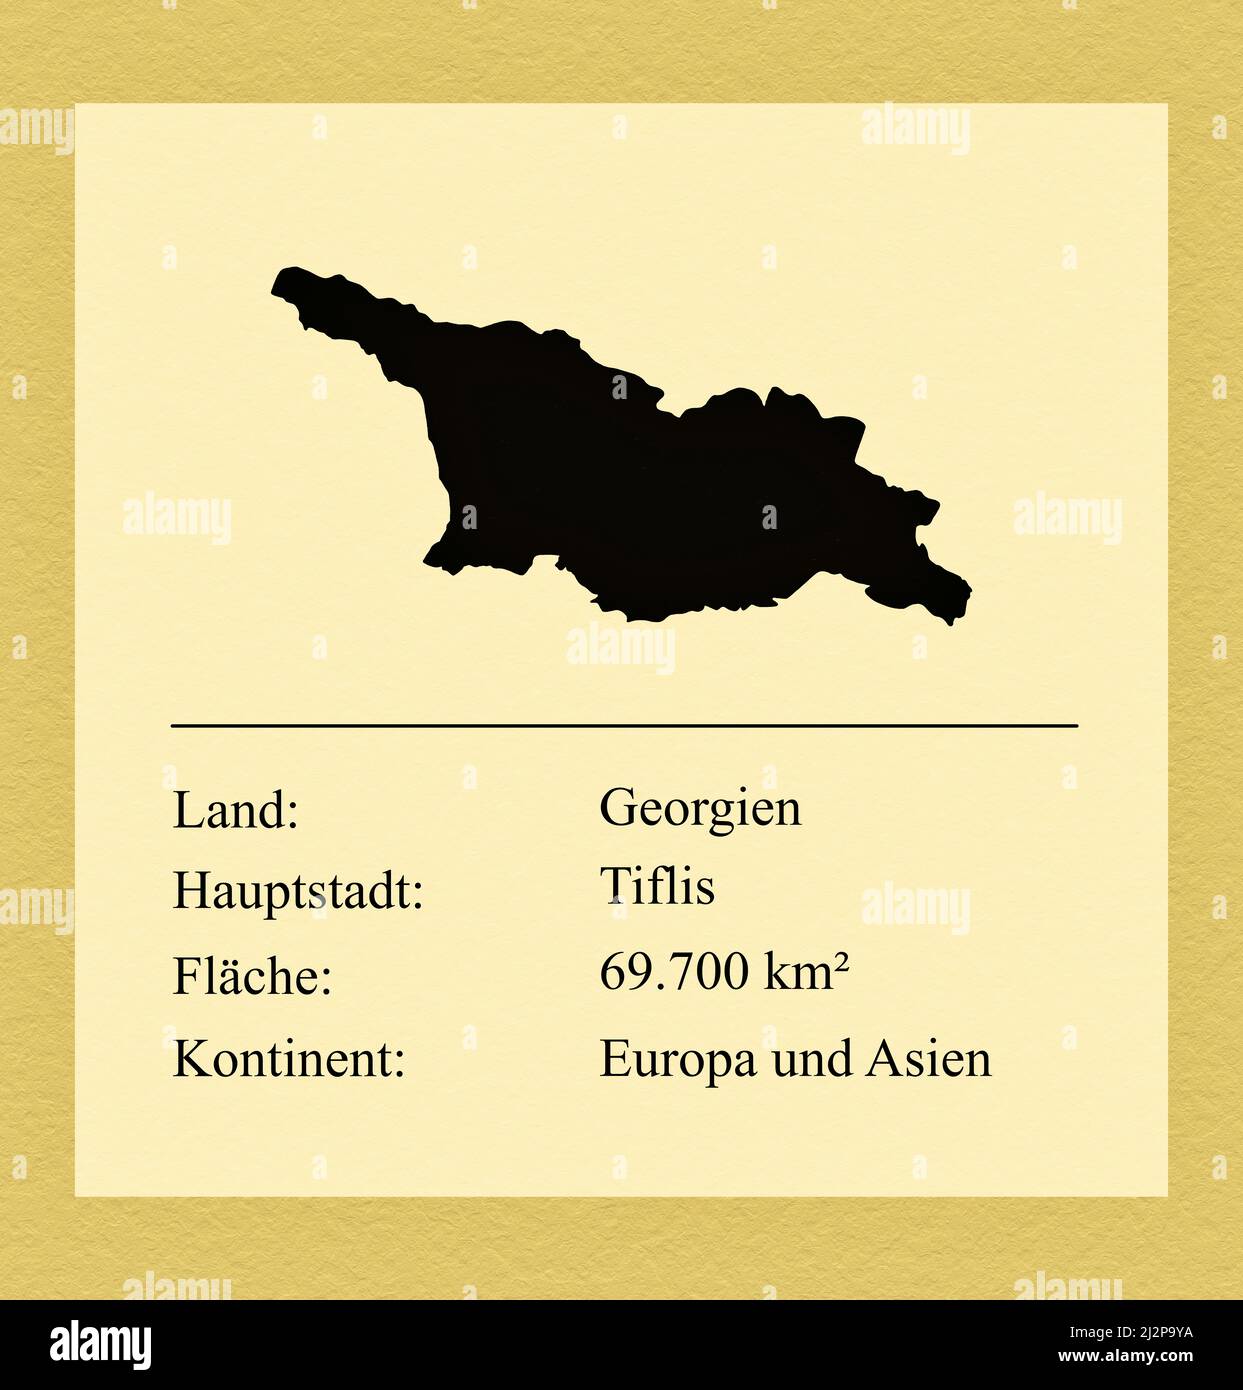 Umrisse des Landes Georgien, darunter ein kleiner Steckbrief mit Ländernamen, Hauptstadt, Fläche und Kontinent Foto Stock